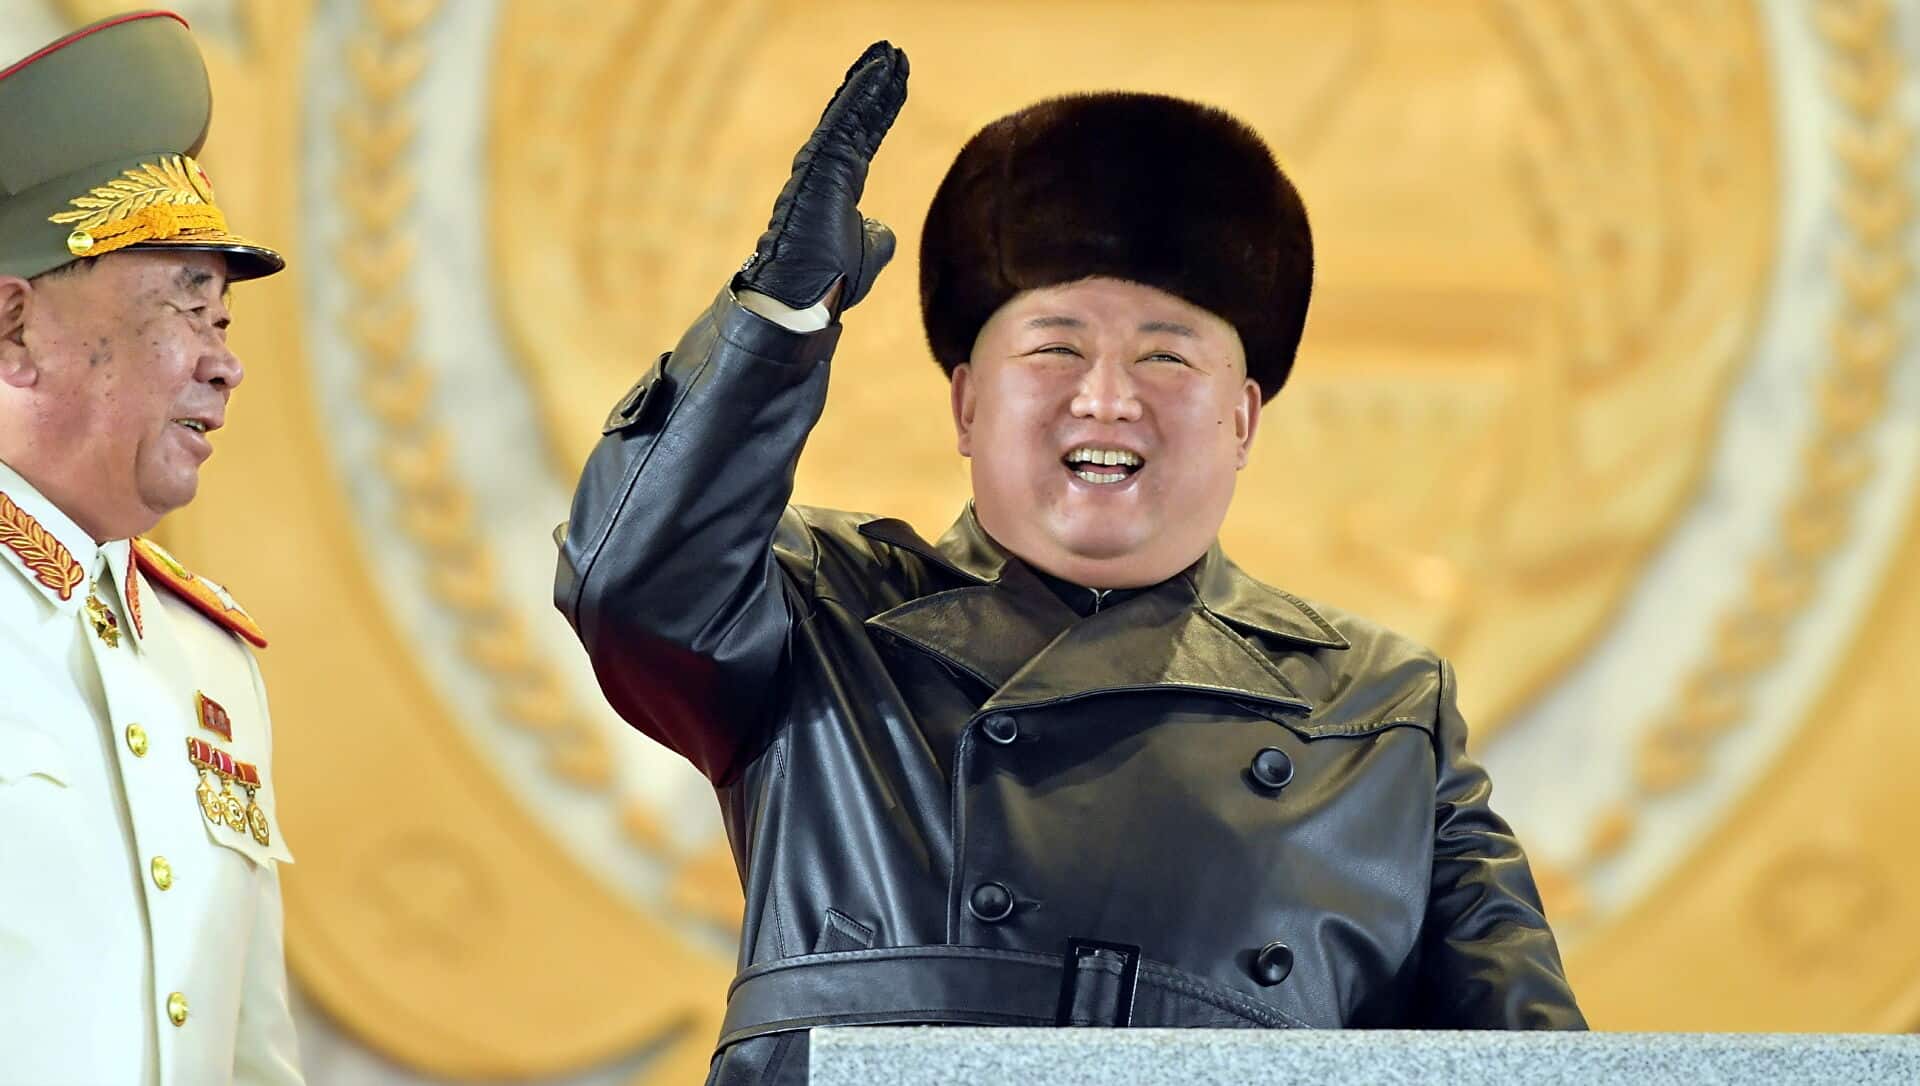 لأول مرة ..كوريا الشمالية تقر بإختبار صاروخا فرط صوتي يحمل "رأسا حربيا انزلاقيا"